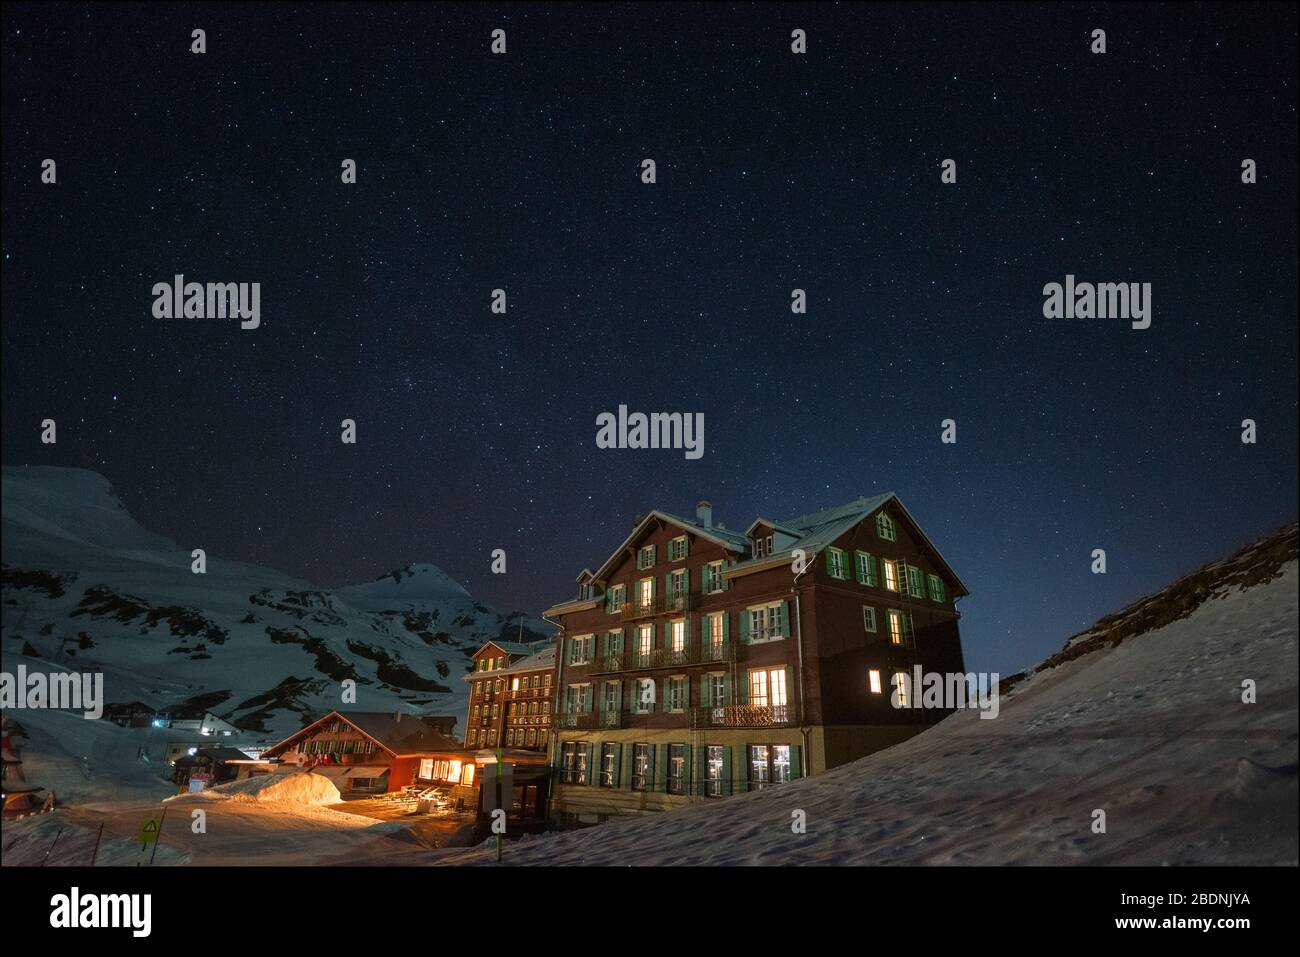 Hotel Bellevue des Alpes, Kleine Scheidegg at night Stock Photo